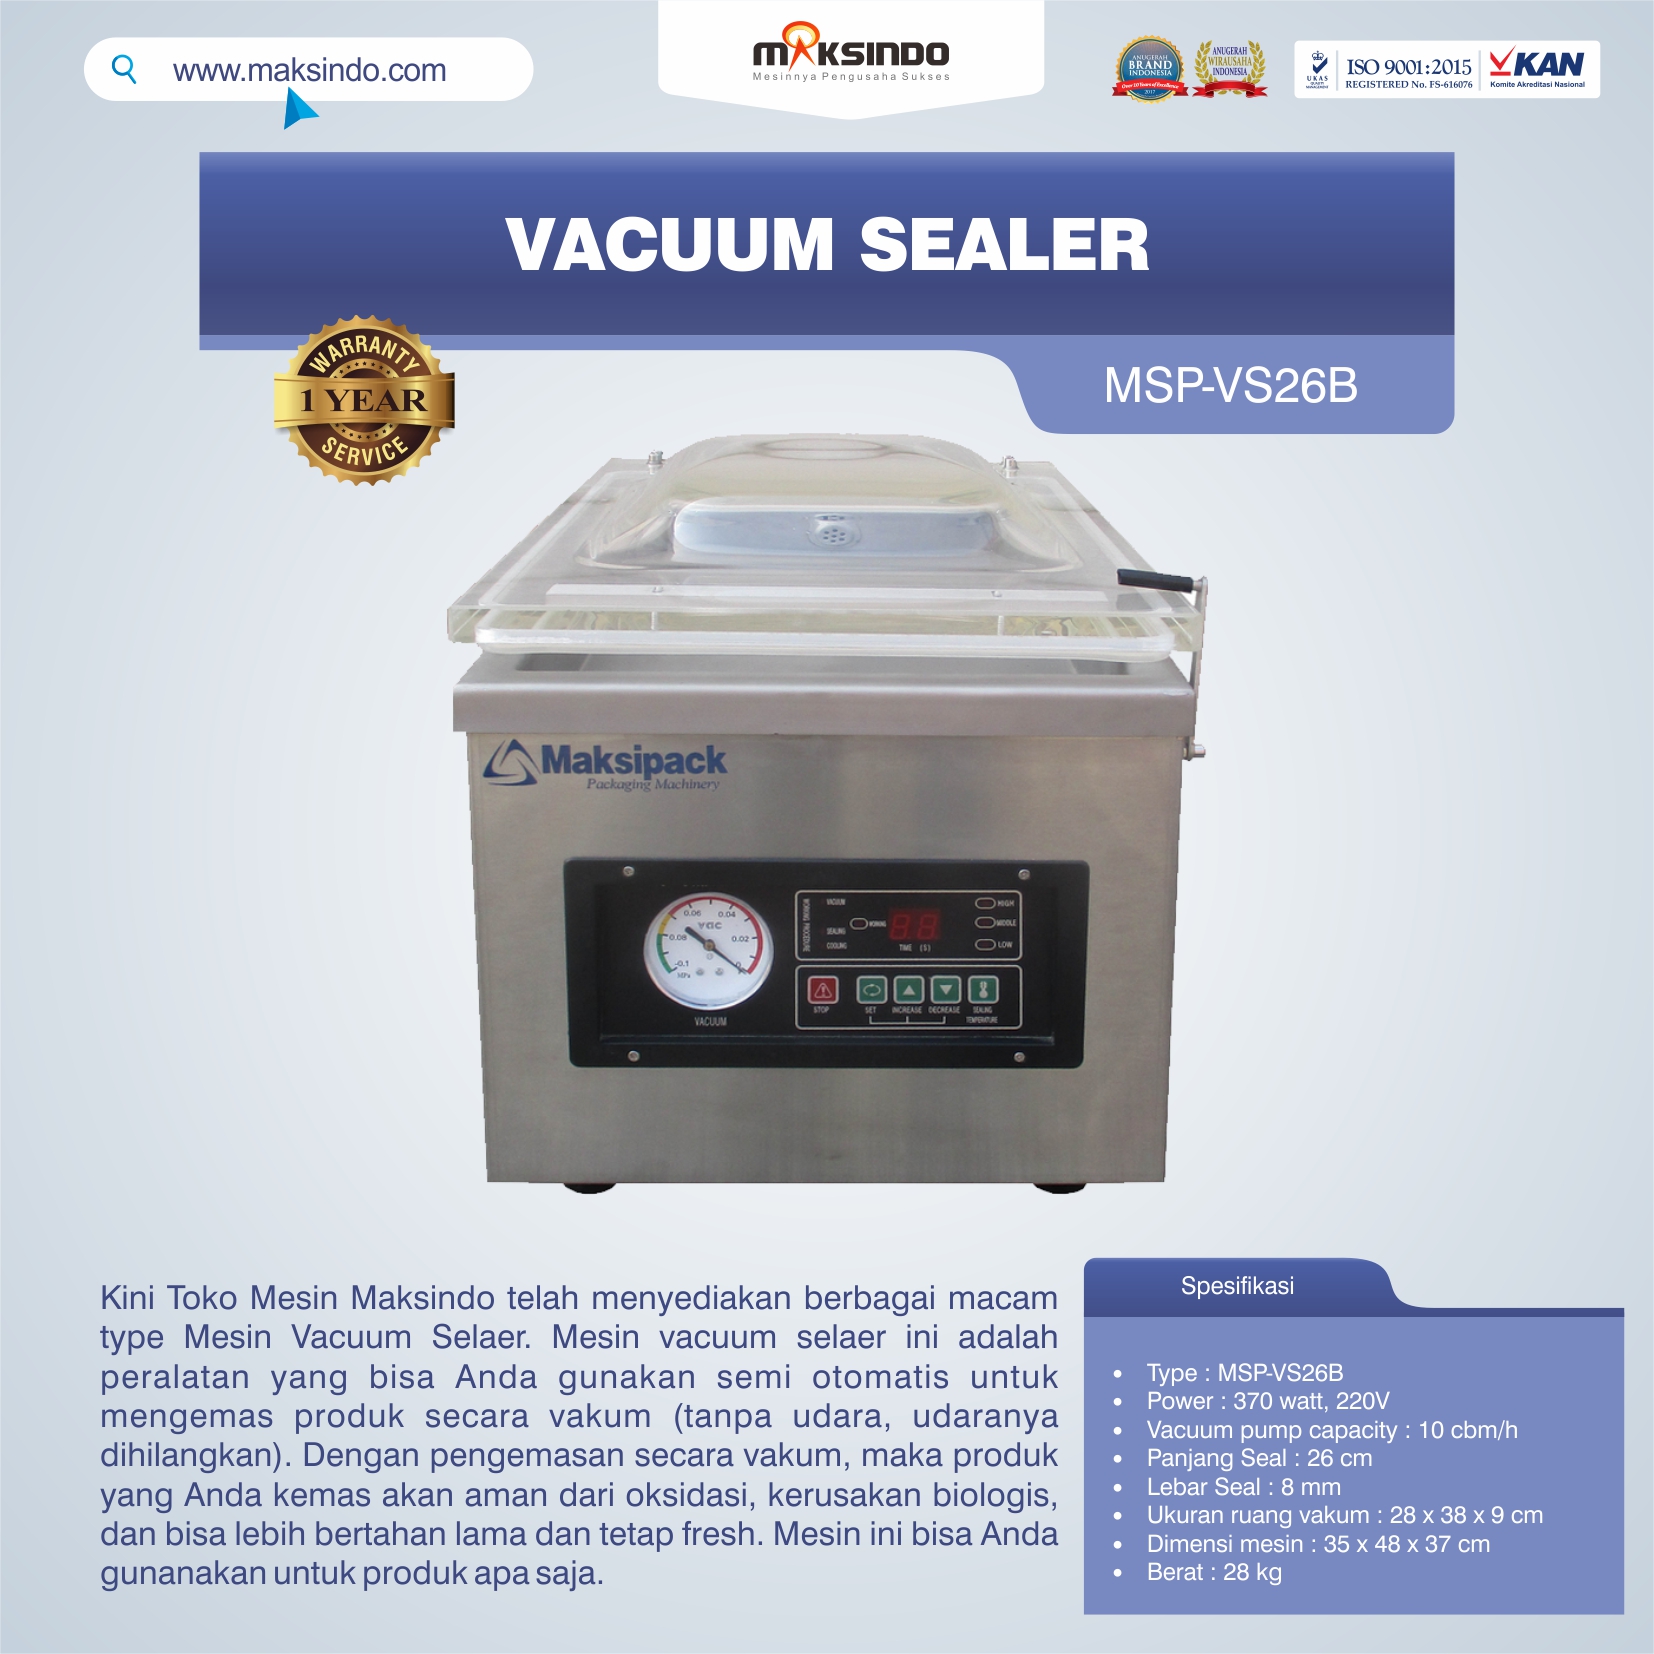 Jual Vacuum Sealer MSP-VS26B di Malang